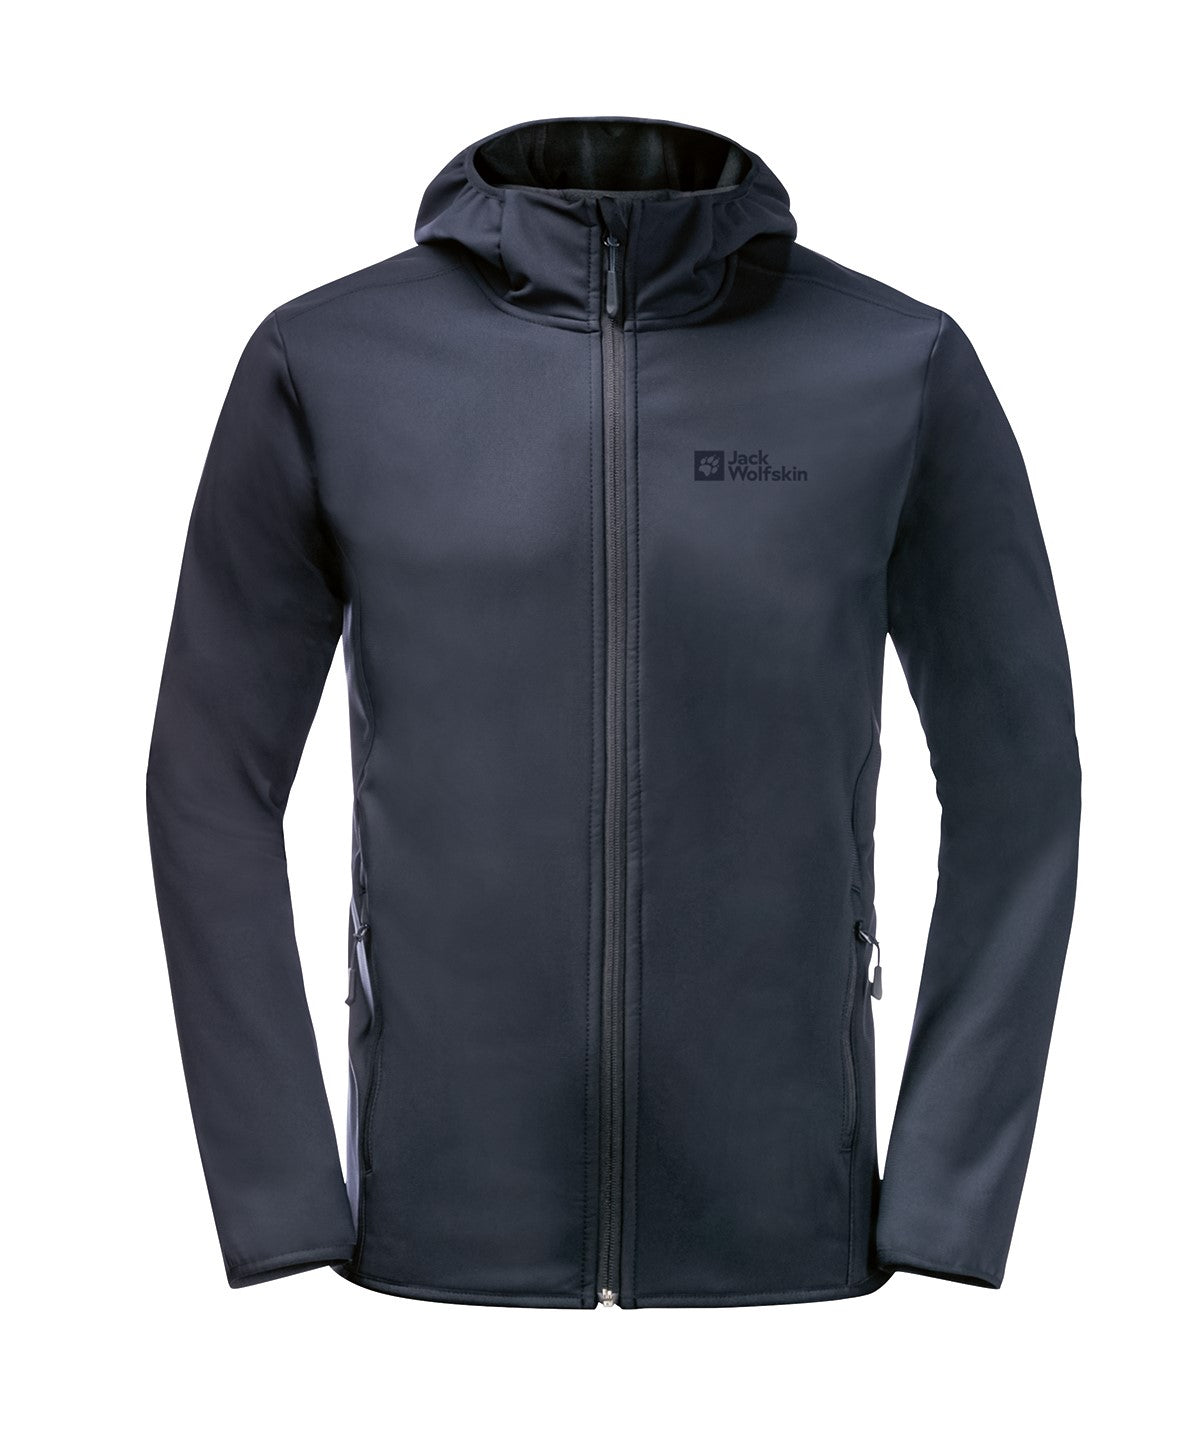 Personalised Jackets - Black Jack Wolfskin Hooded softshell jacket (NL)